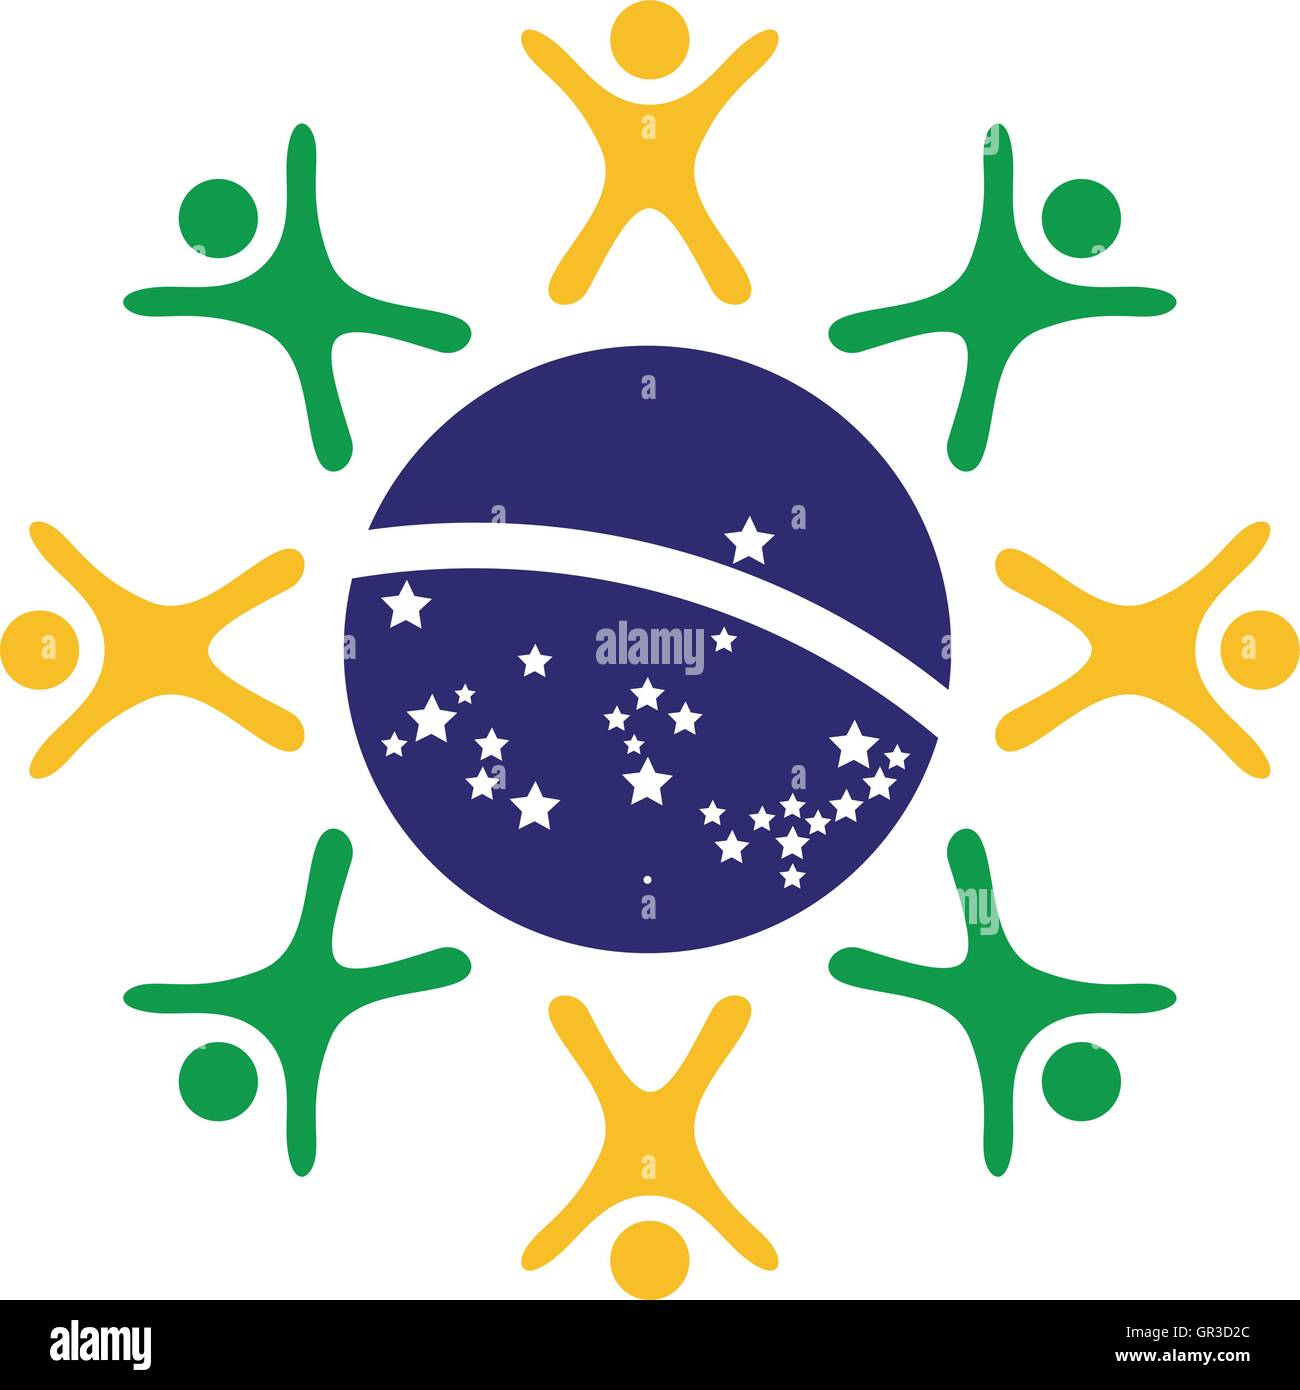 L'unité personnes concept dans la forme et les couleurs de drapeau brésilien Illustration de Vecteur